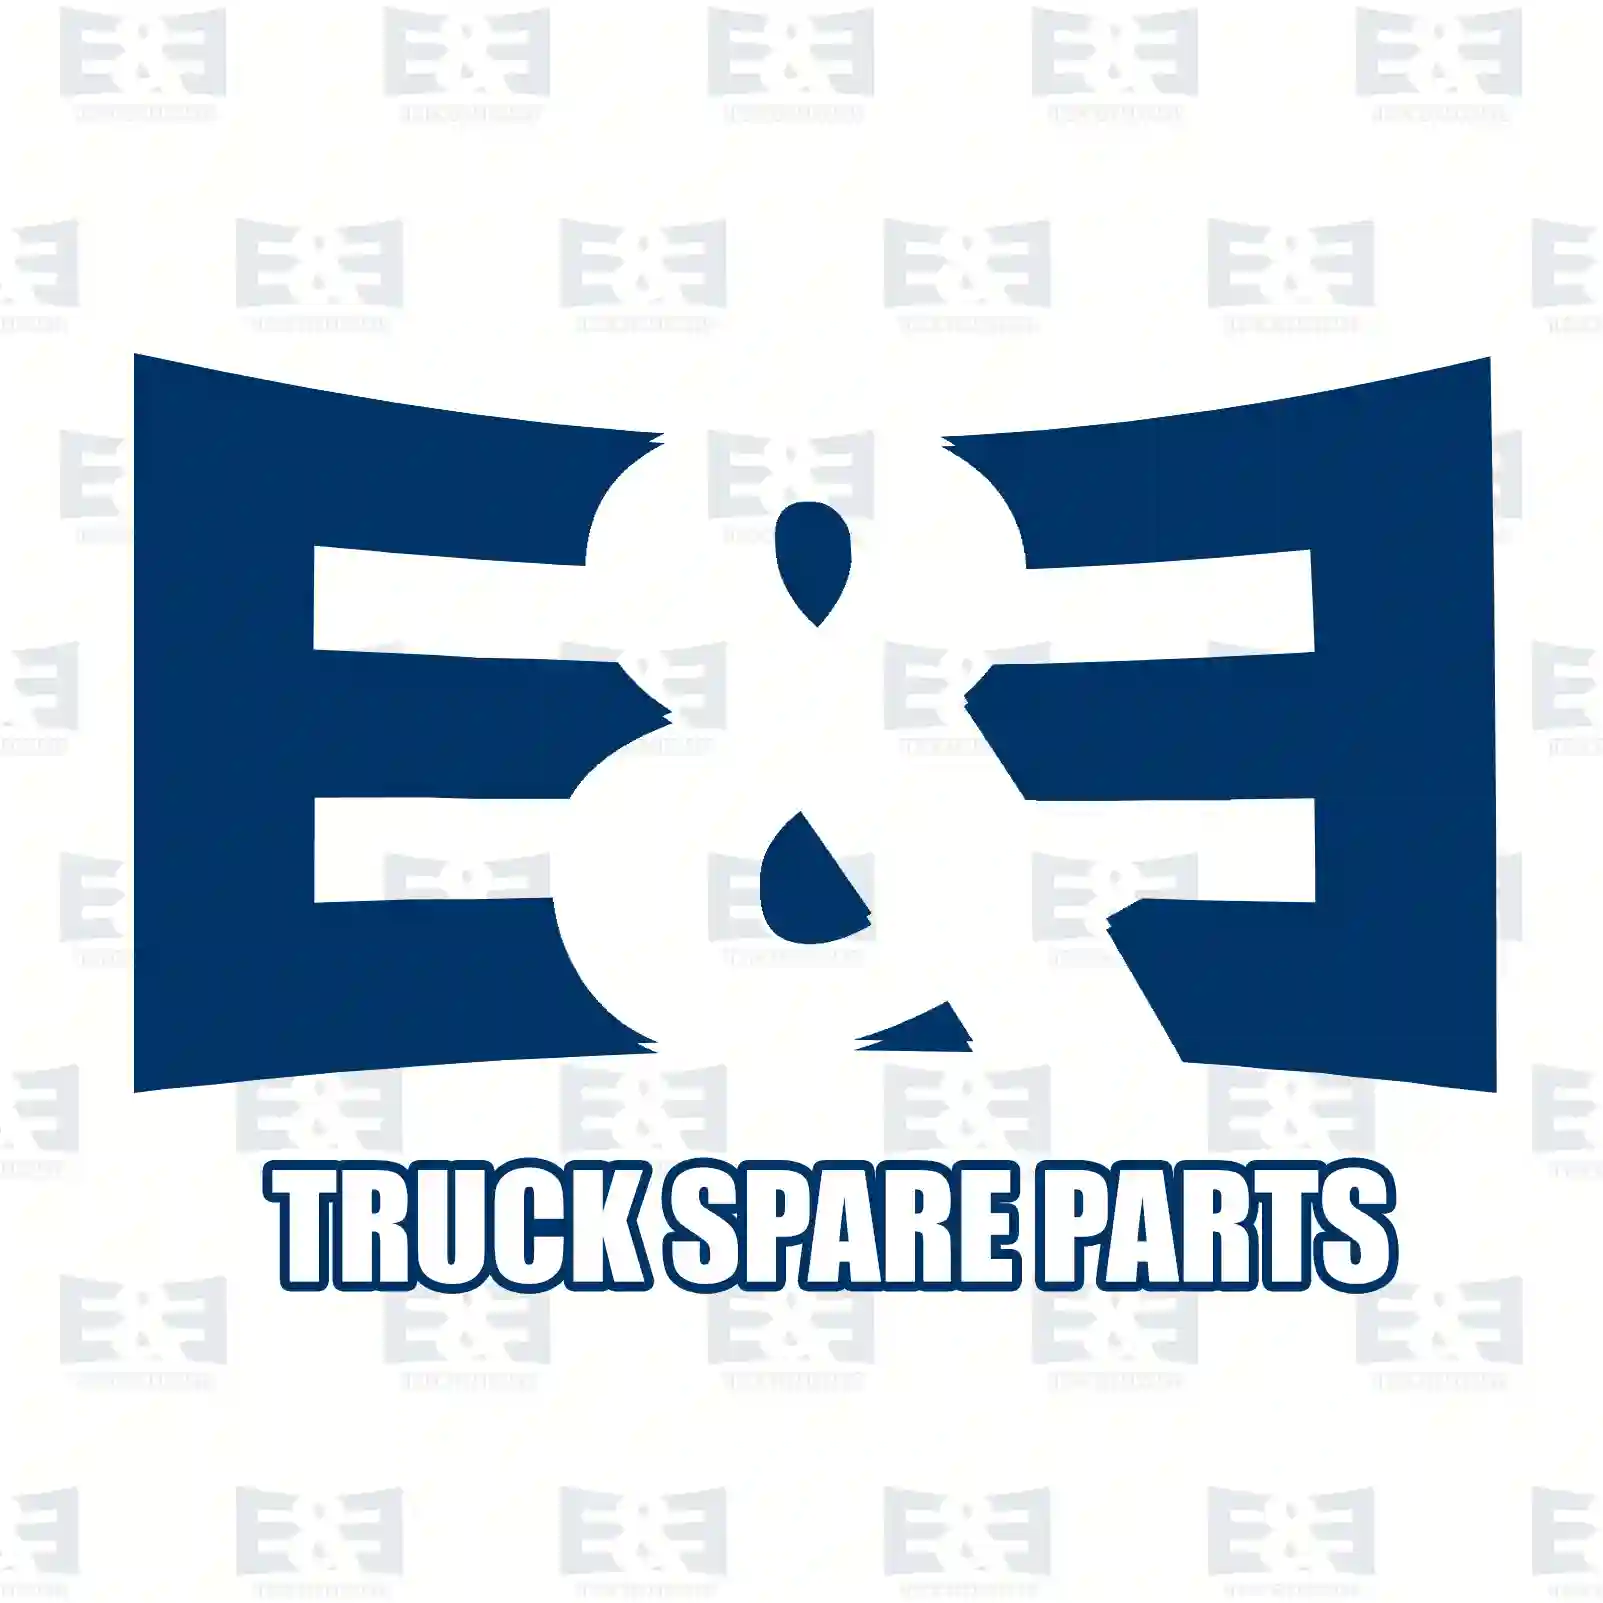 Repair kit, split cylinder, 2E2277511, 270562, 270925 ||  2E2277511 E&E Truck Spare Parts | Truck Spare Parts, Auotomotive Spare Parts Repair kit, split cylinder, 2E2277511, 270562, 270925 ||  2E2277511 E&E Truck Spare Parts | Truck Spare Parts, Auotomotive Spare Parts